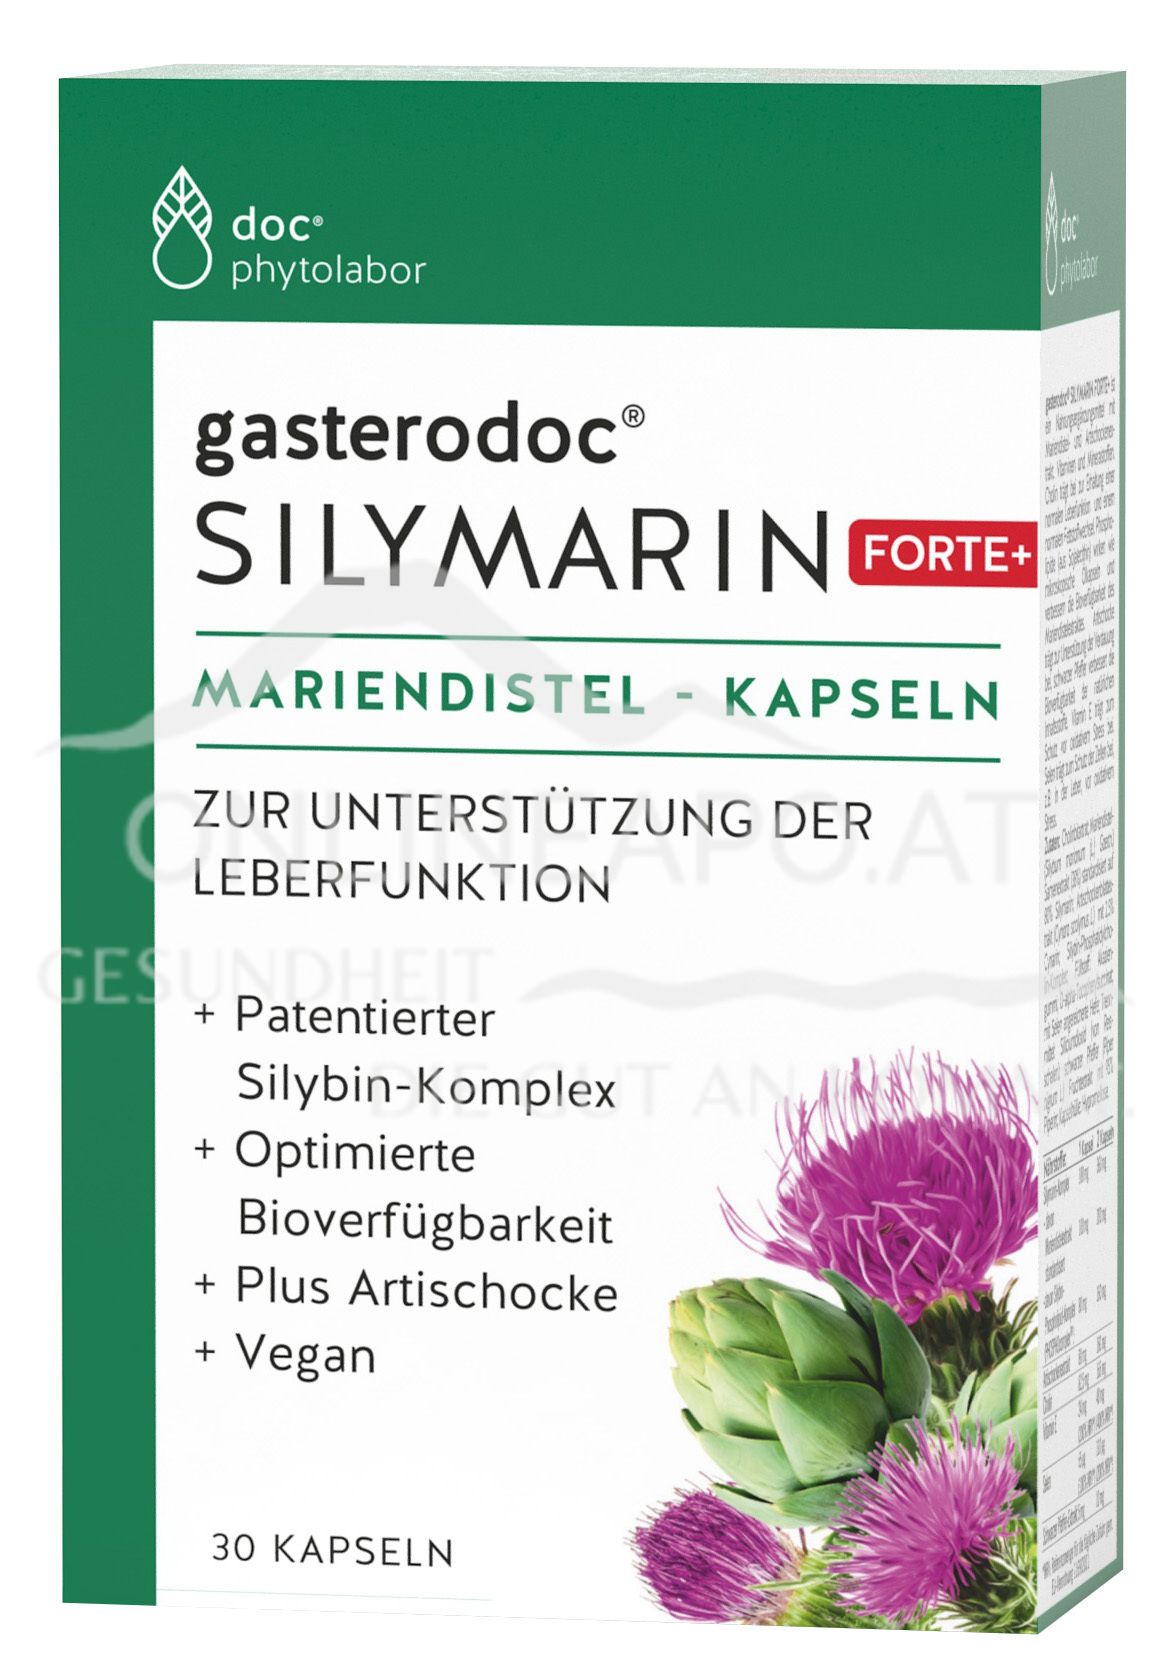 doc nature‘s SILYMARIN FORTE + Mariendistel-Kapseln